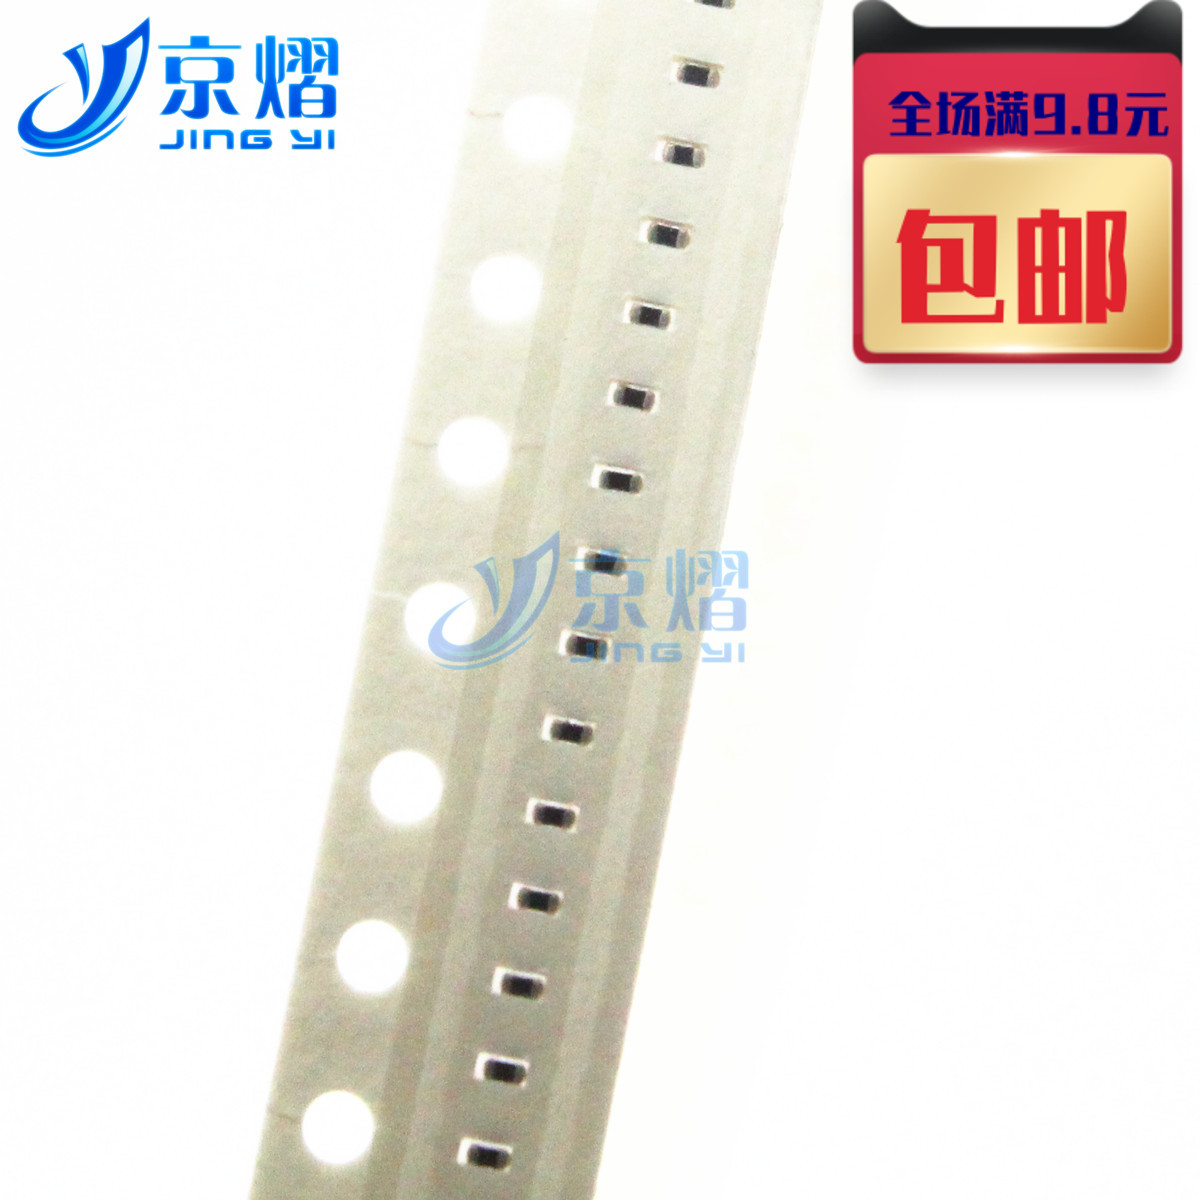 Jingyi 0402 patch  pressure sensitive   resistance  12V SFI0402ML120C-LF (100 pieces)